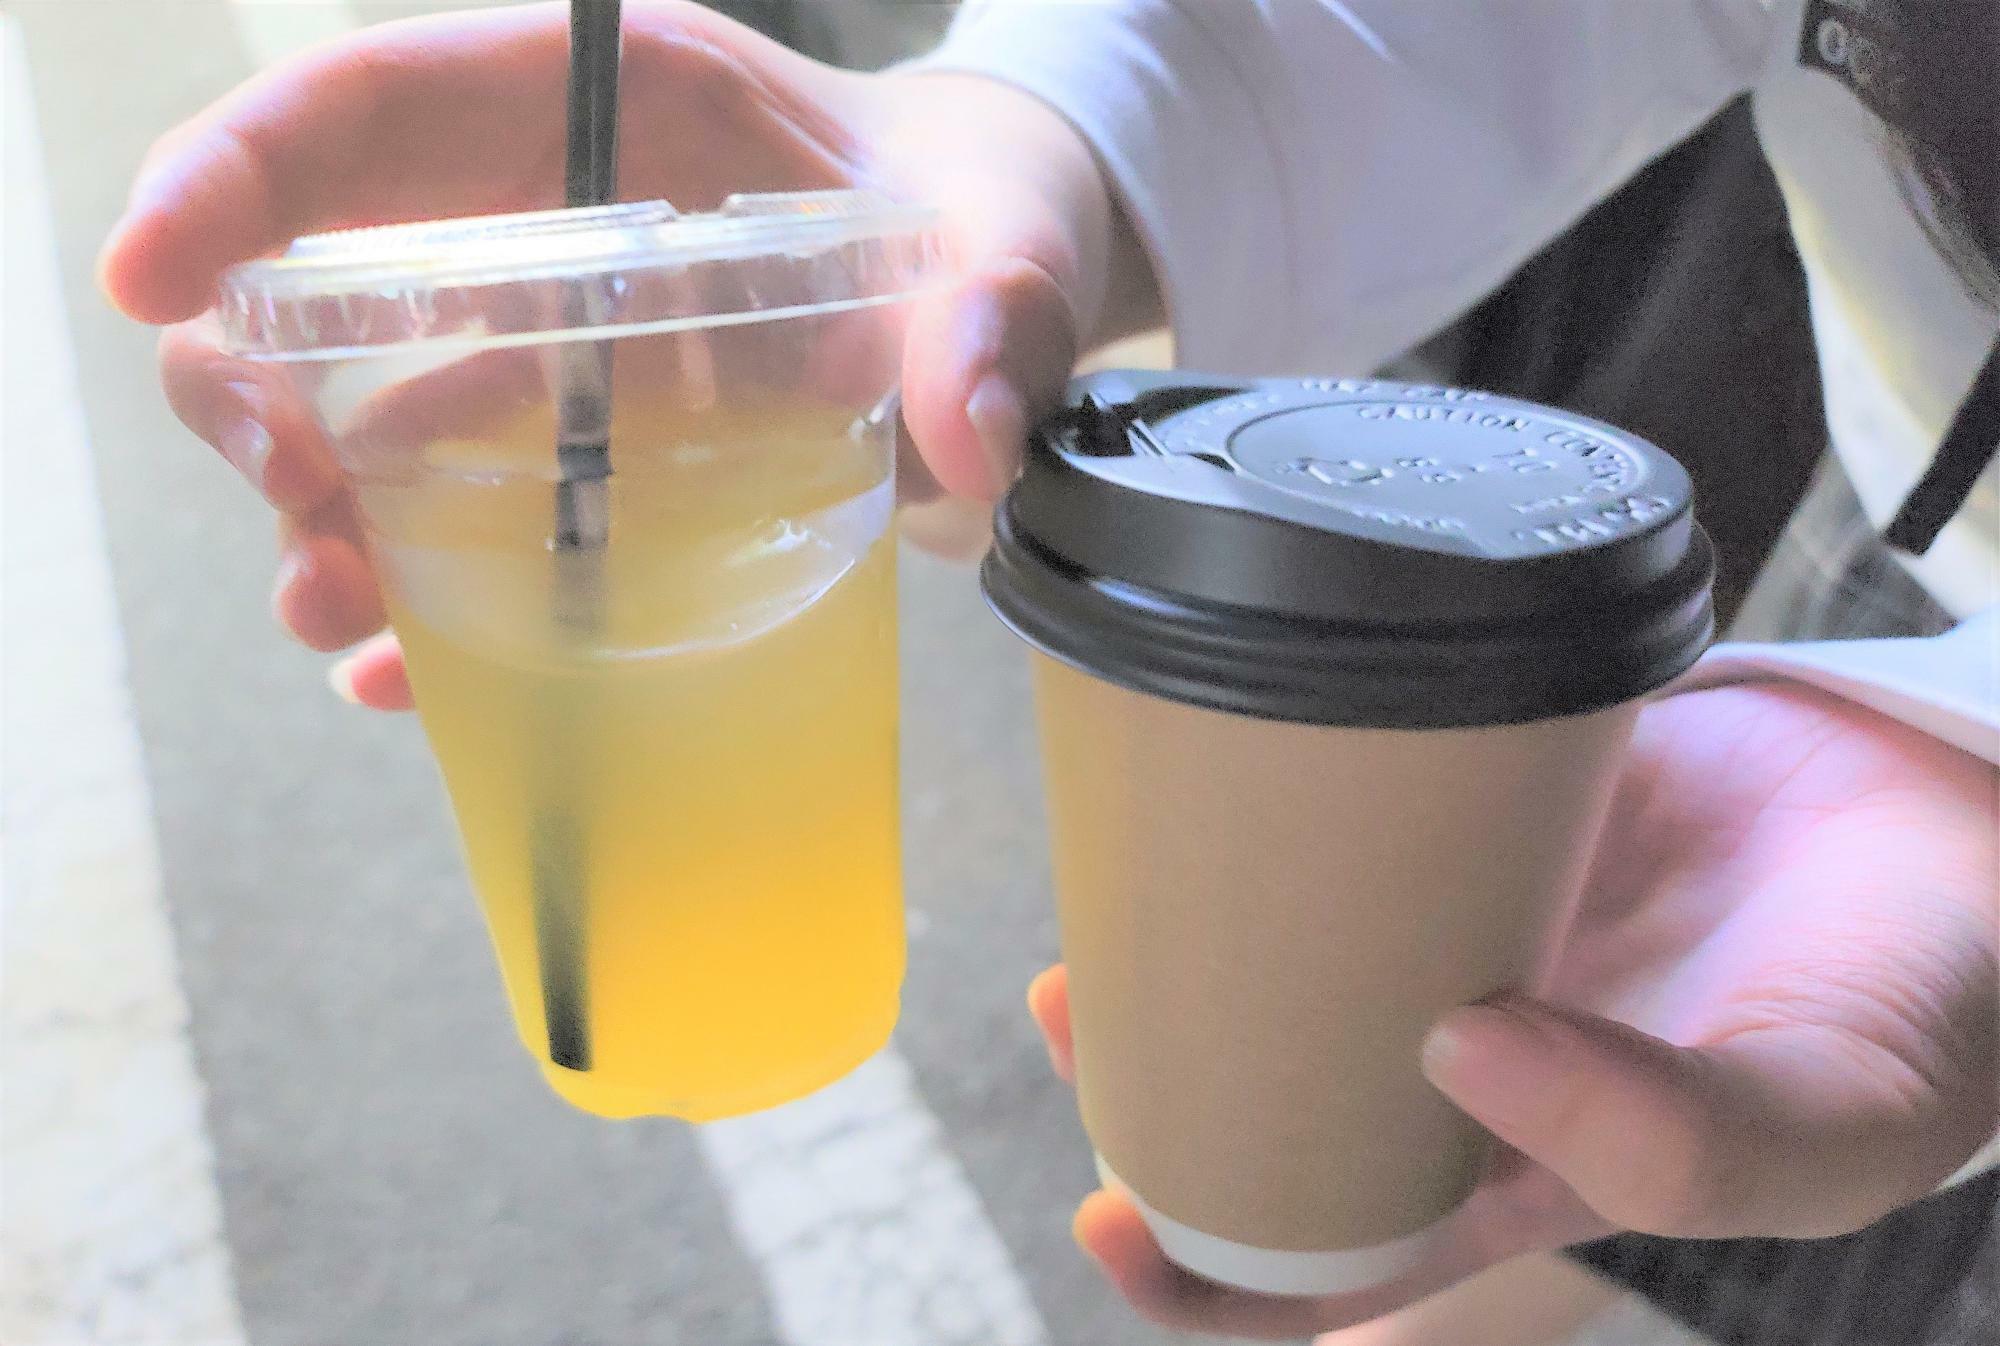 無料のドリンク。オレンジジュース左）、ホットコーヒー（右）。